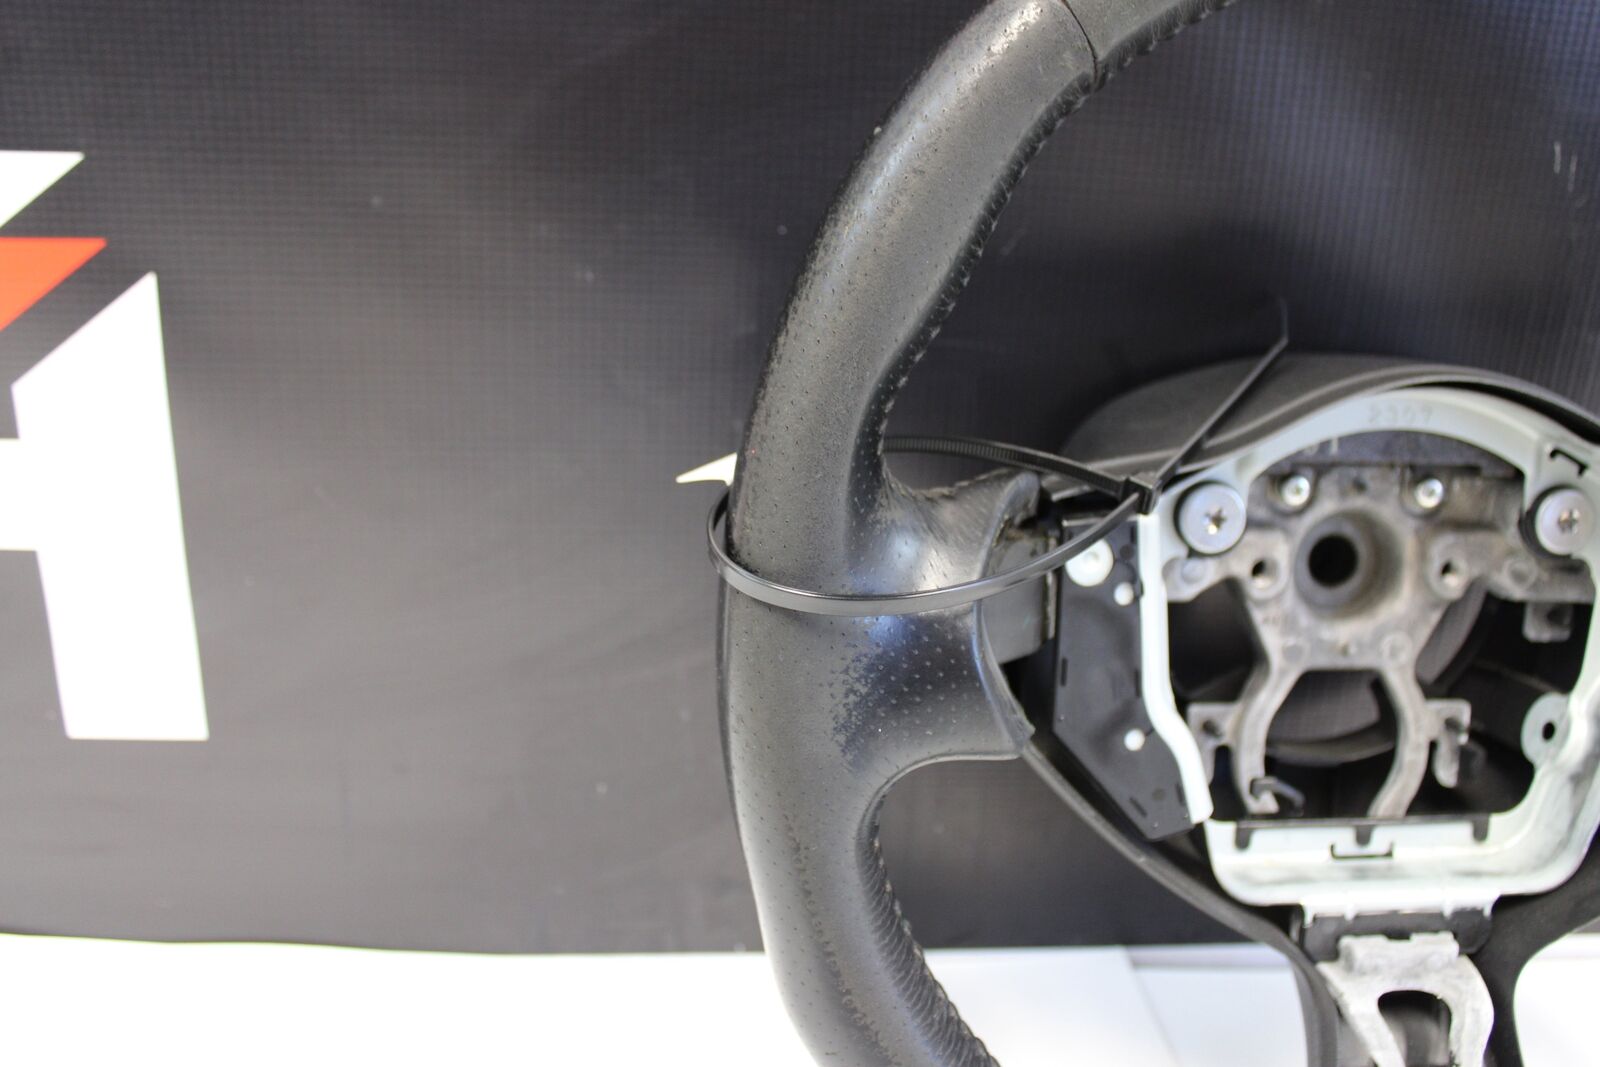 2009-2017 Nissan 370z Steering Wheel OEM